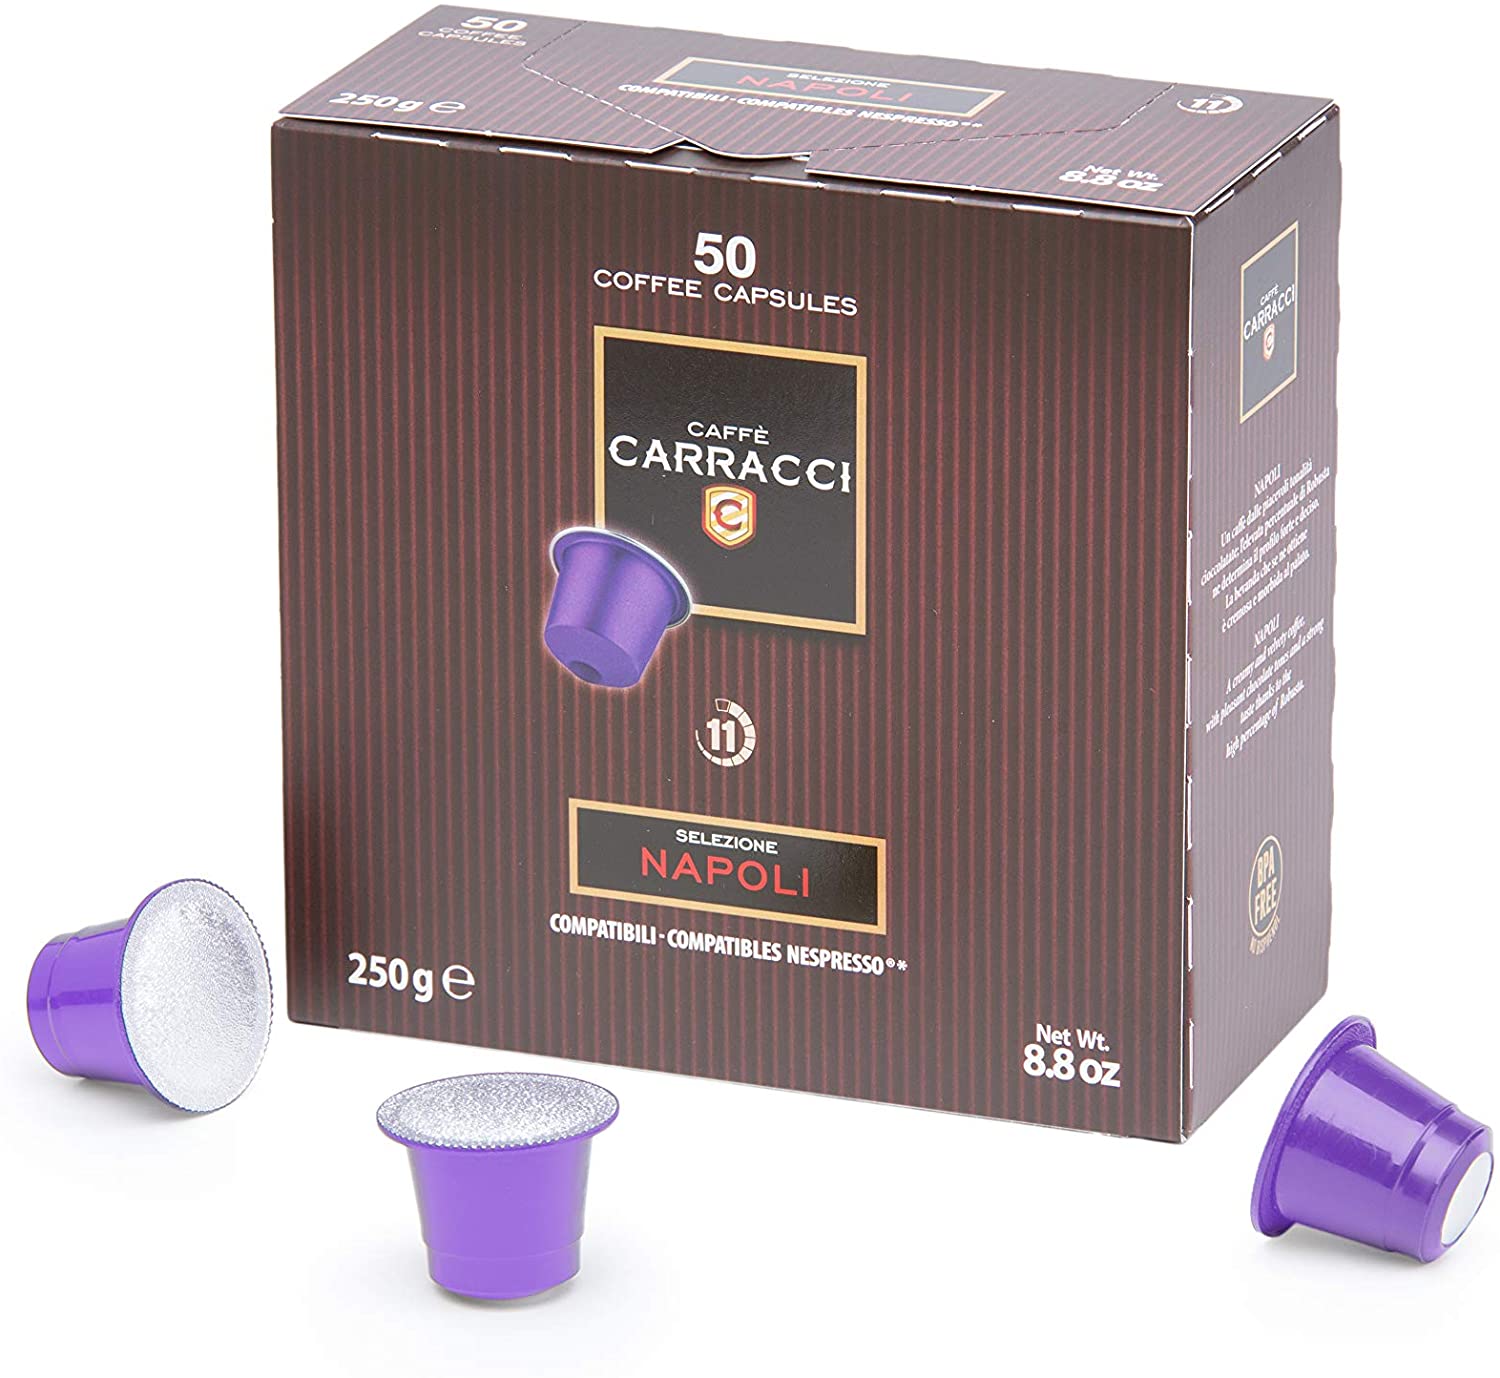 Caffè Carracci Capsule Compatibili Nespresso Napoli - 50 capsule